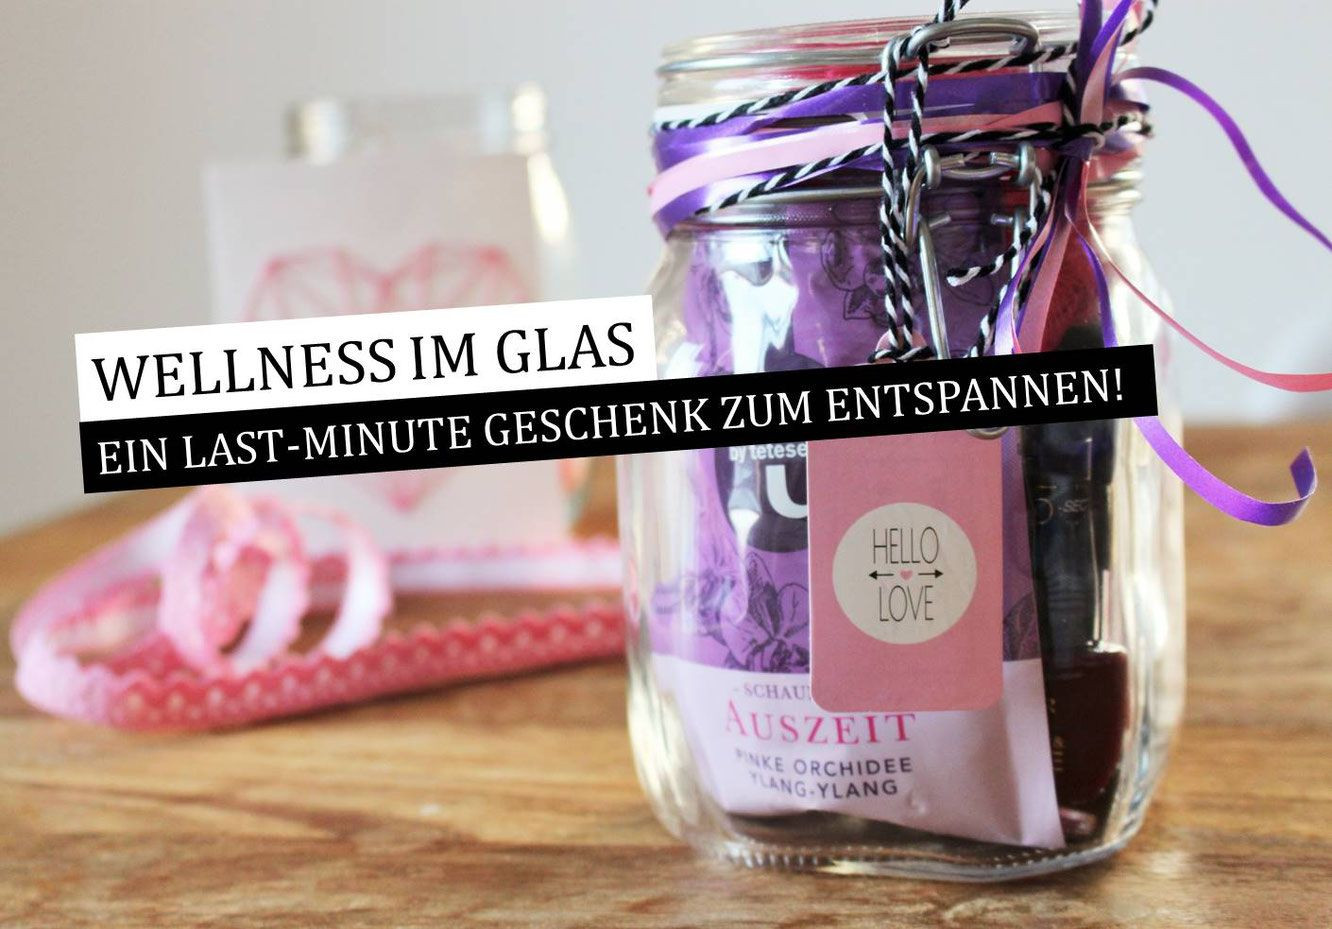 Witzige Geschenke Für Frauen
 DIY Geschenkidee Wellness im Glas